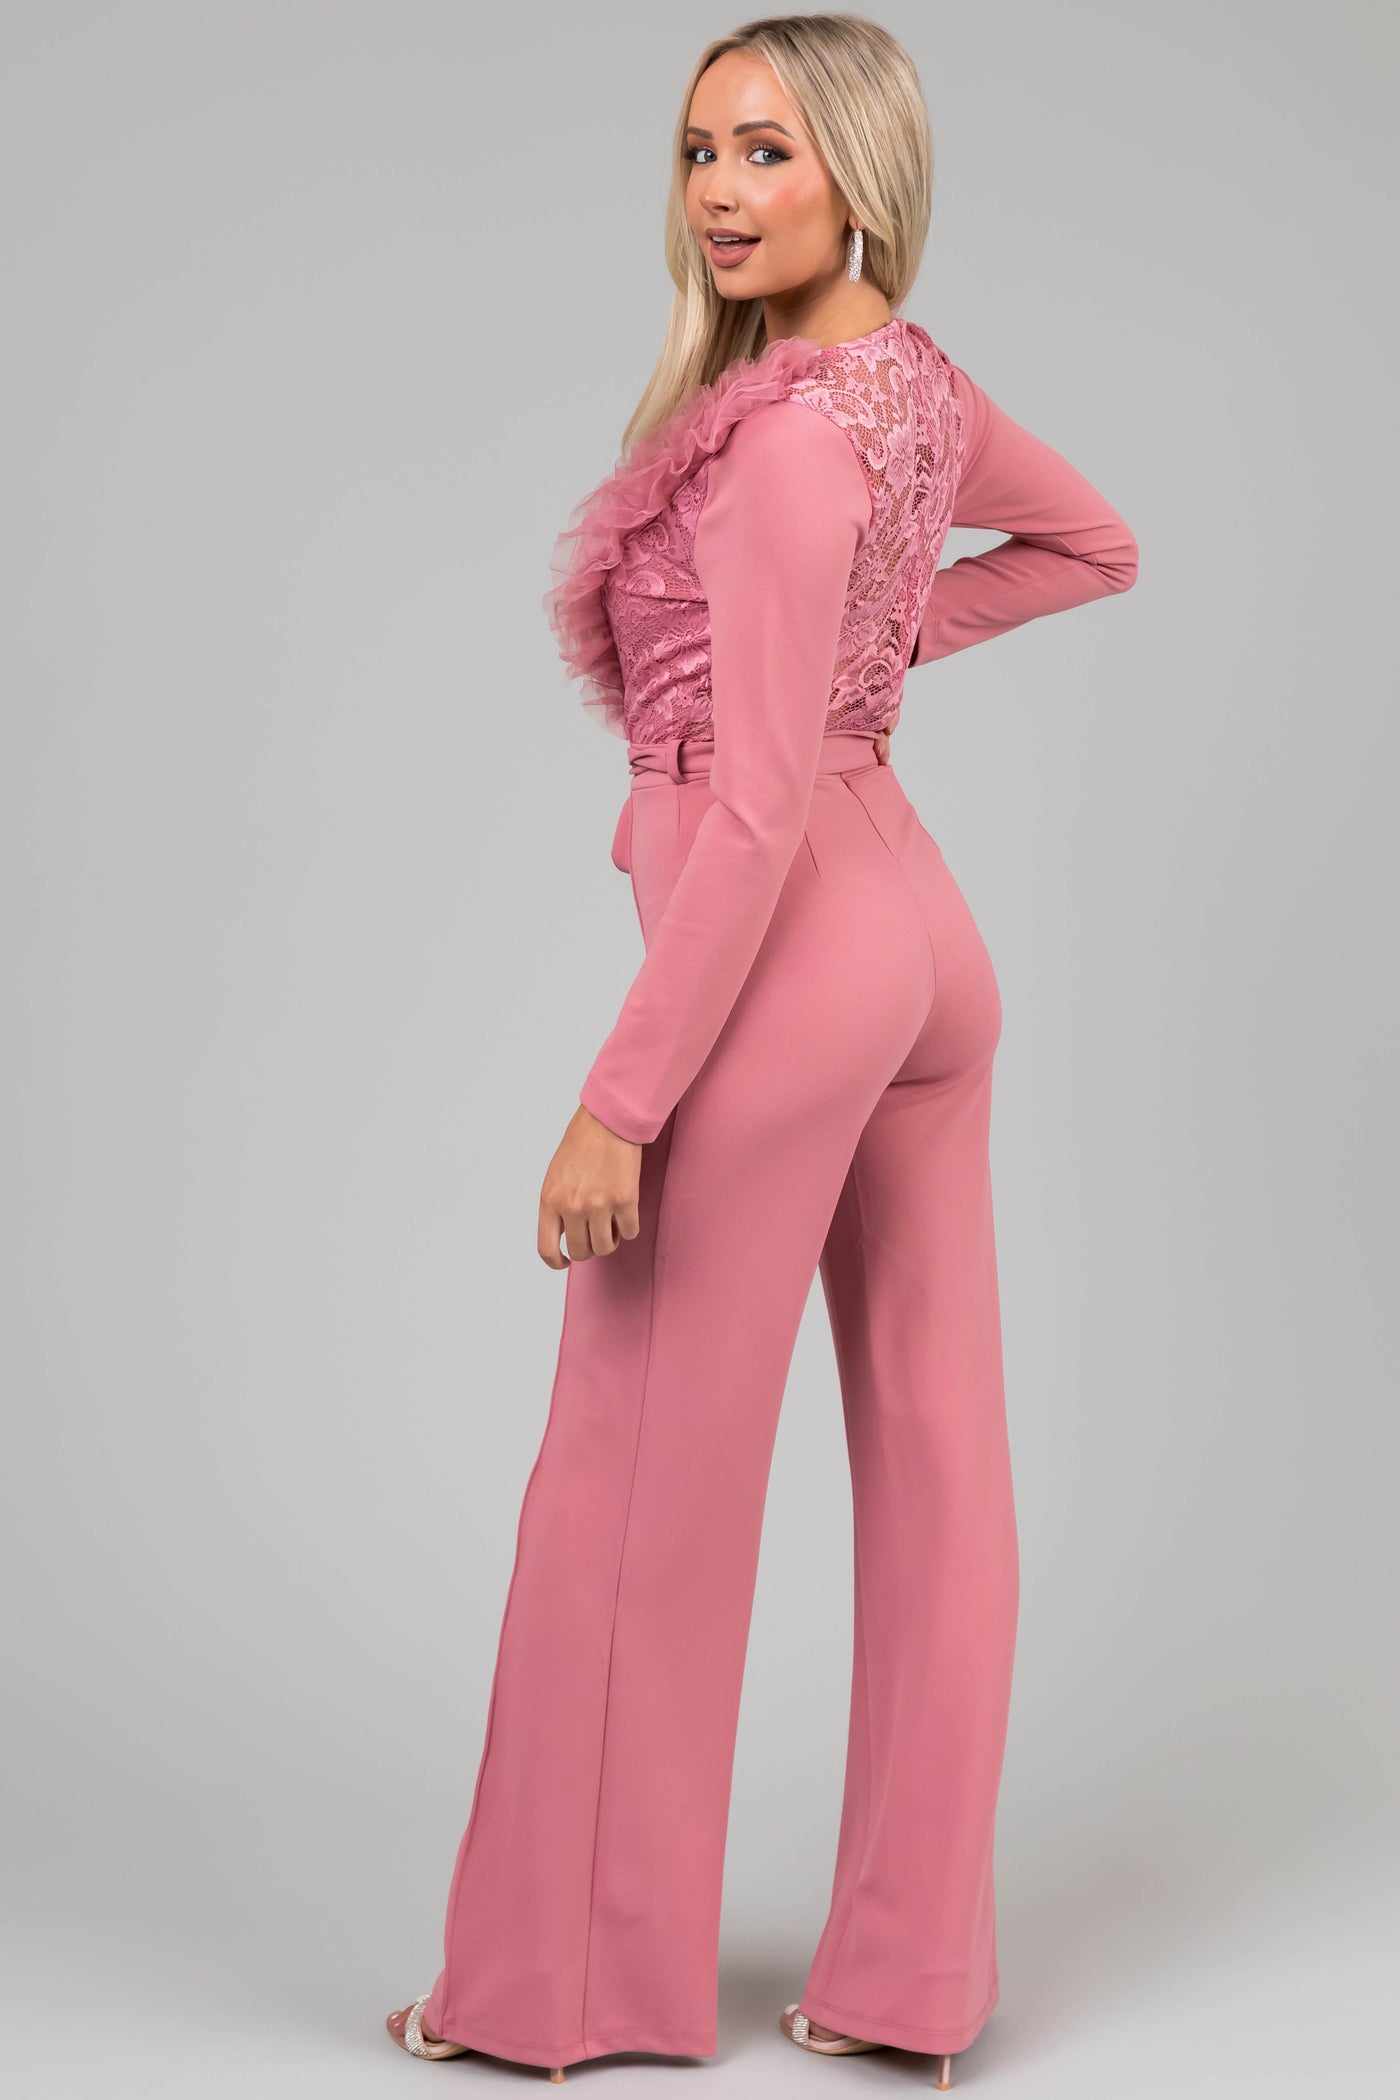 Valentine Dusty Blush Ruffle Neckline Floral Lace Jumpsuit - Size S